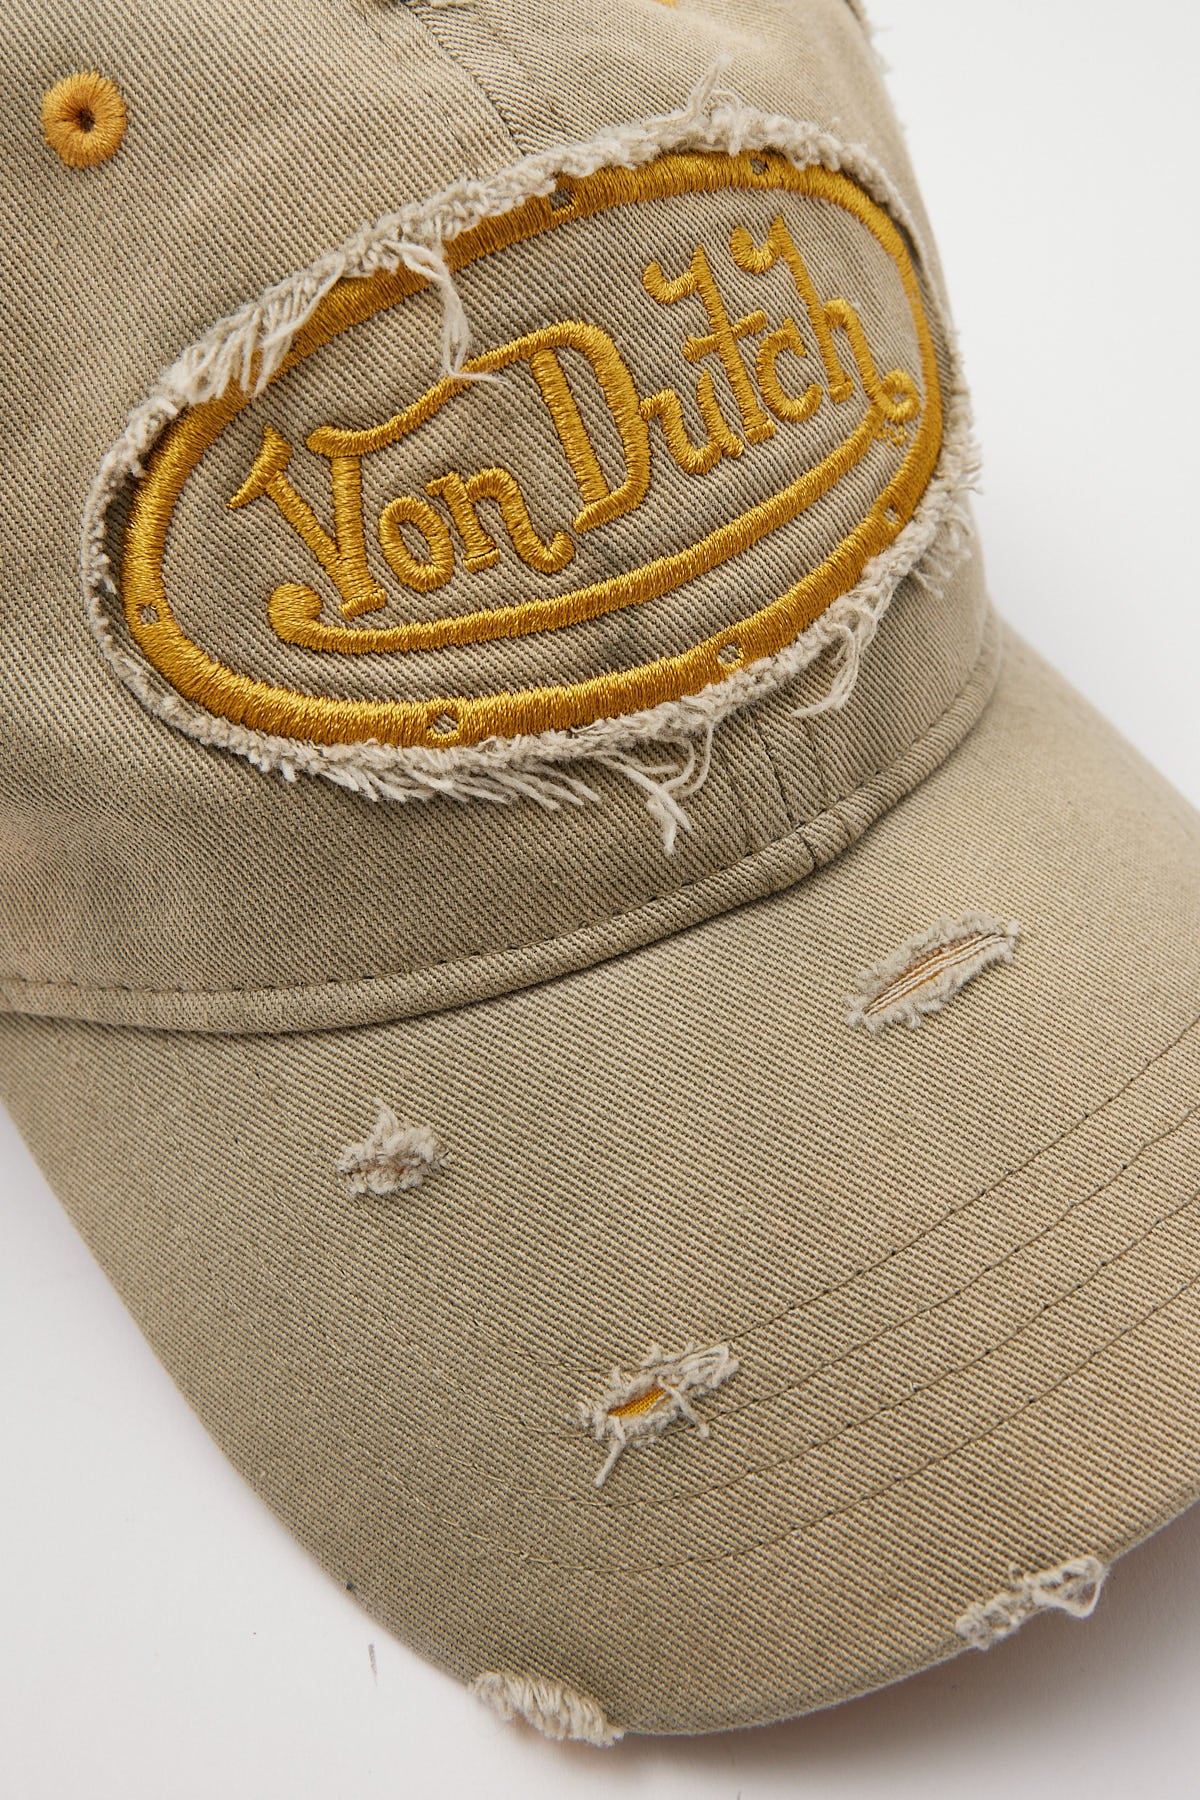 Von Dutch Dad Cap Embroidery Patch Destroyed Khaki